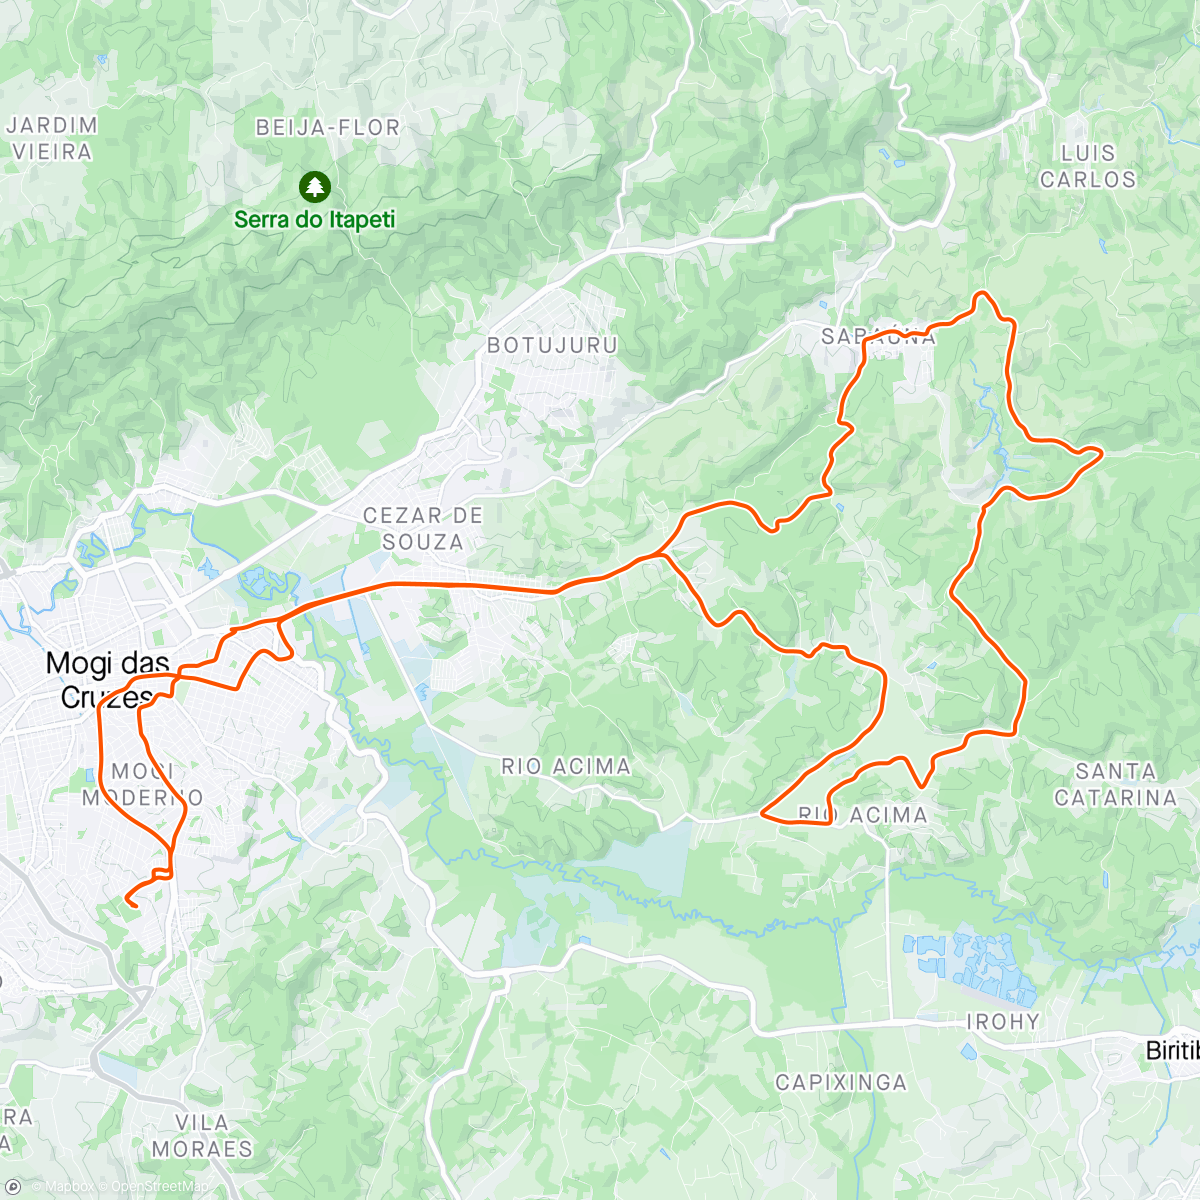 Map of the activity, Zoonoses/Plantação/GV/Cavalo Morto/Placa/Pinheirinho/Sabaúna/Eletrificação